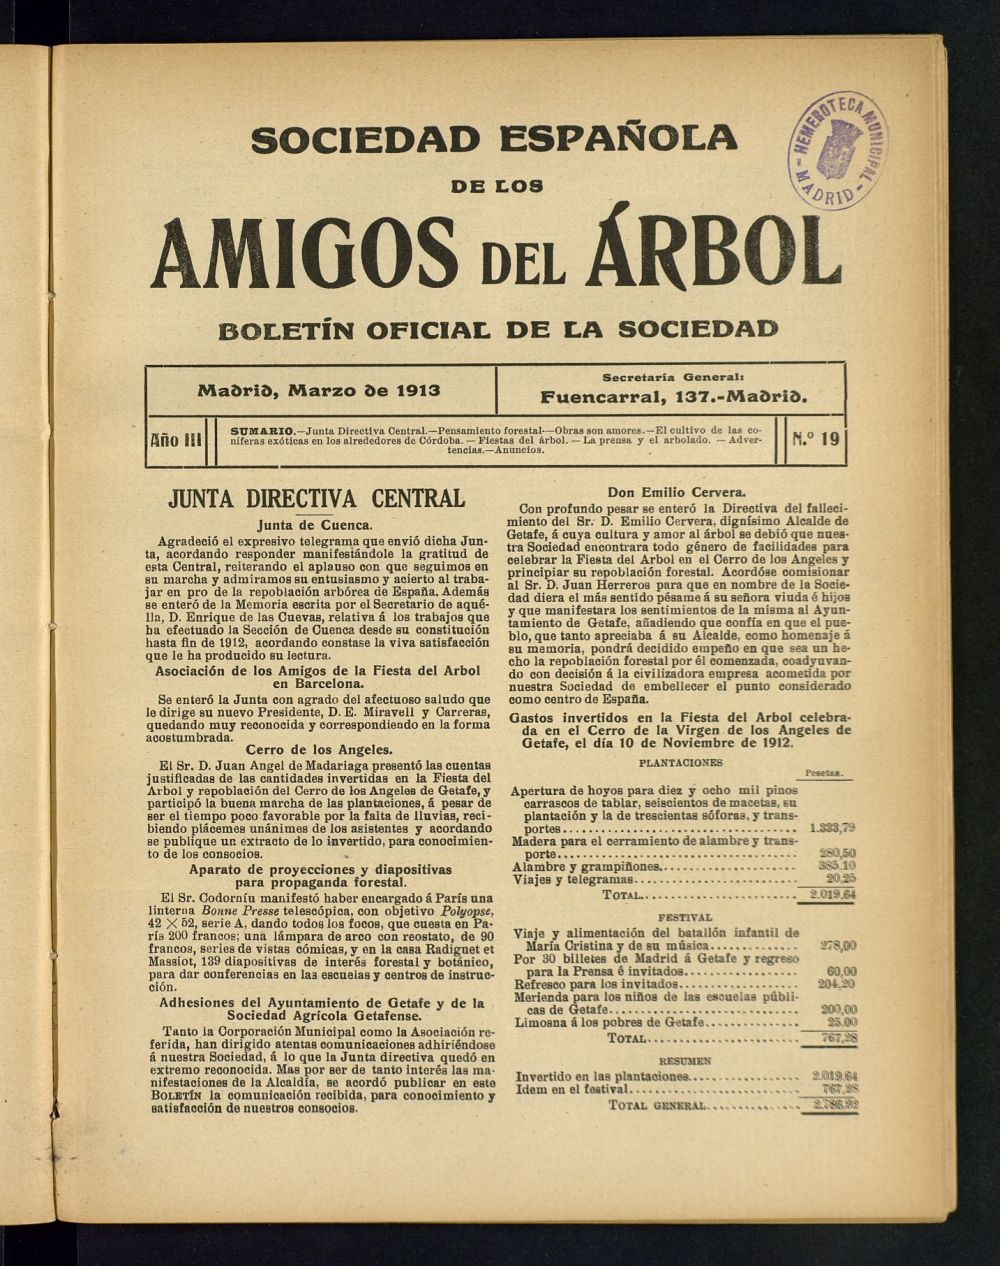 Boletn Comisin organizadora de la Sociedad Espaola de los amigos del rbol de marzo de 1913